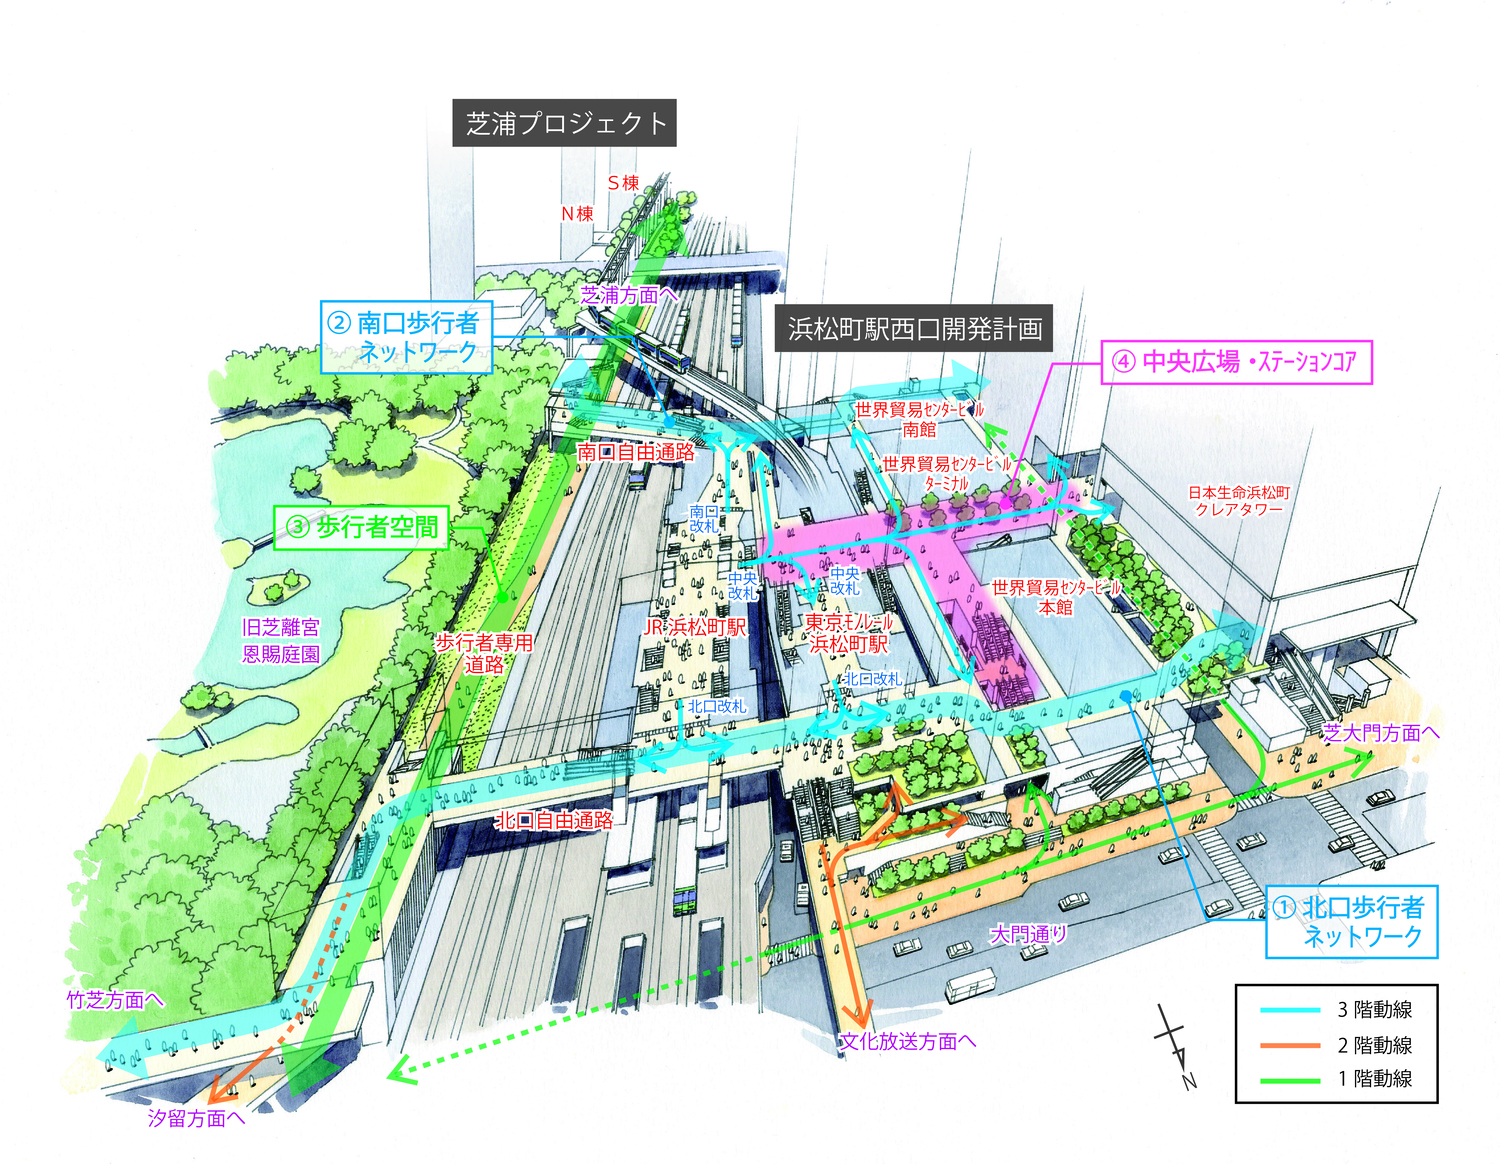 【浜松町駅西口開発計画・芝浦プロジェクト】歩行者ネットワークの構築・交通結節点の機能強化を目的とした浜松町駅エリアの整備計画について